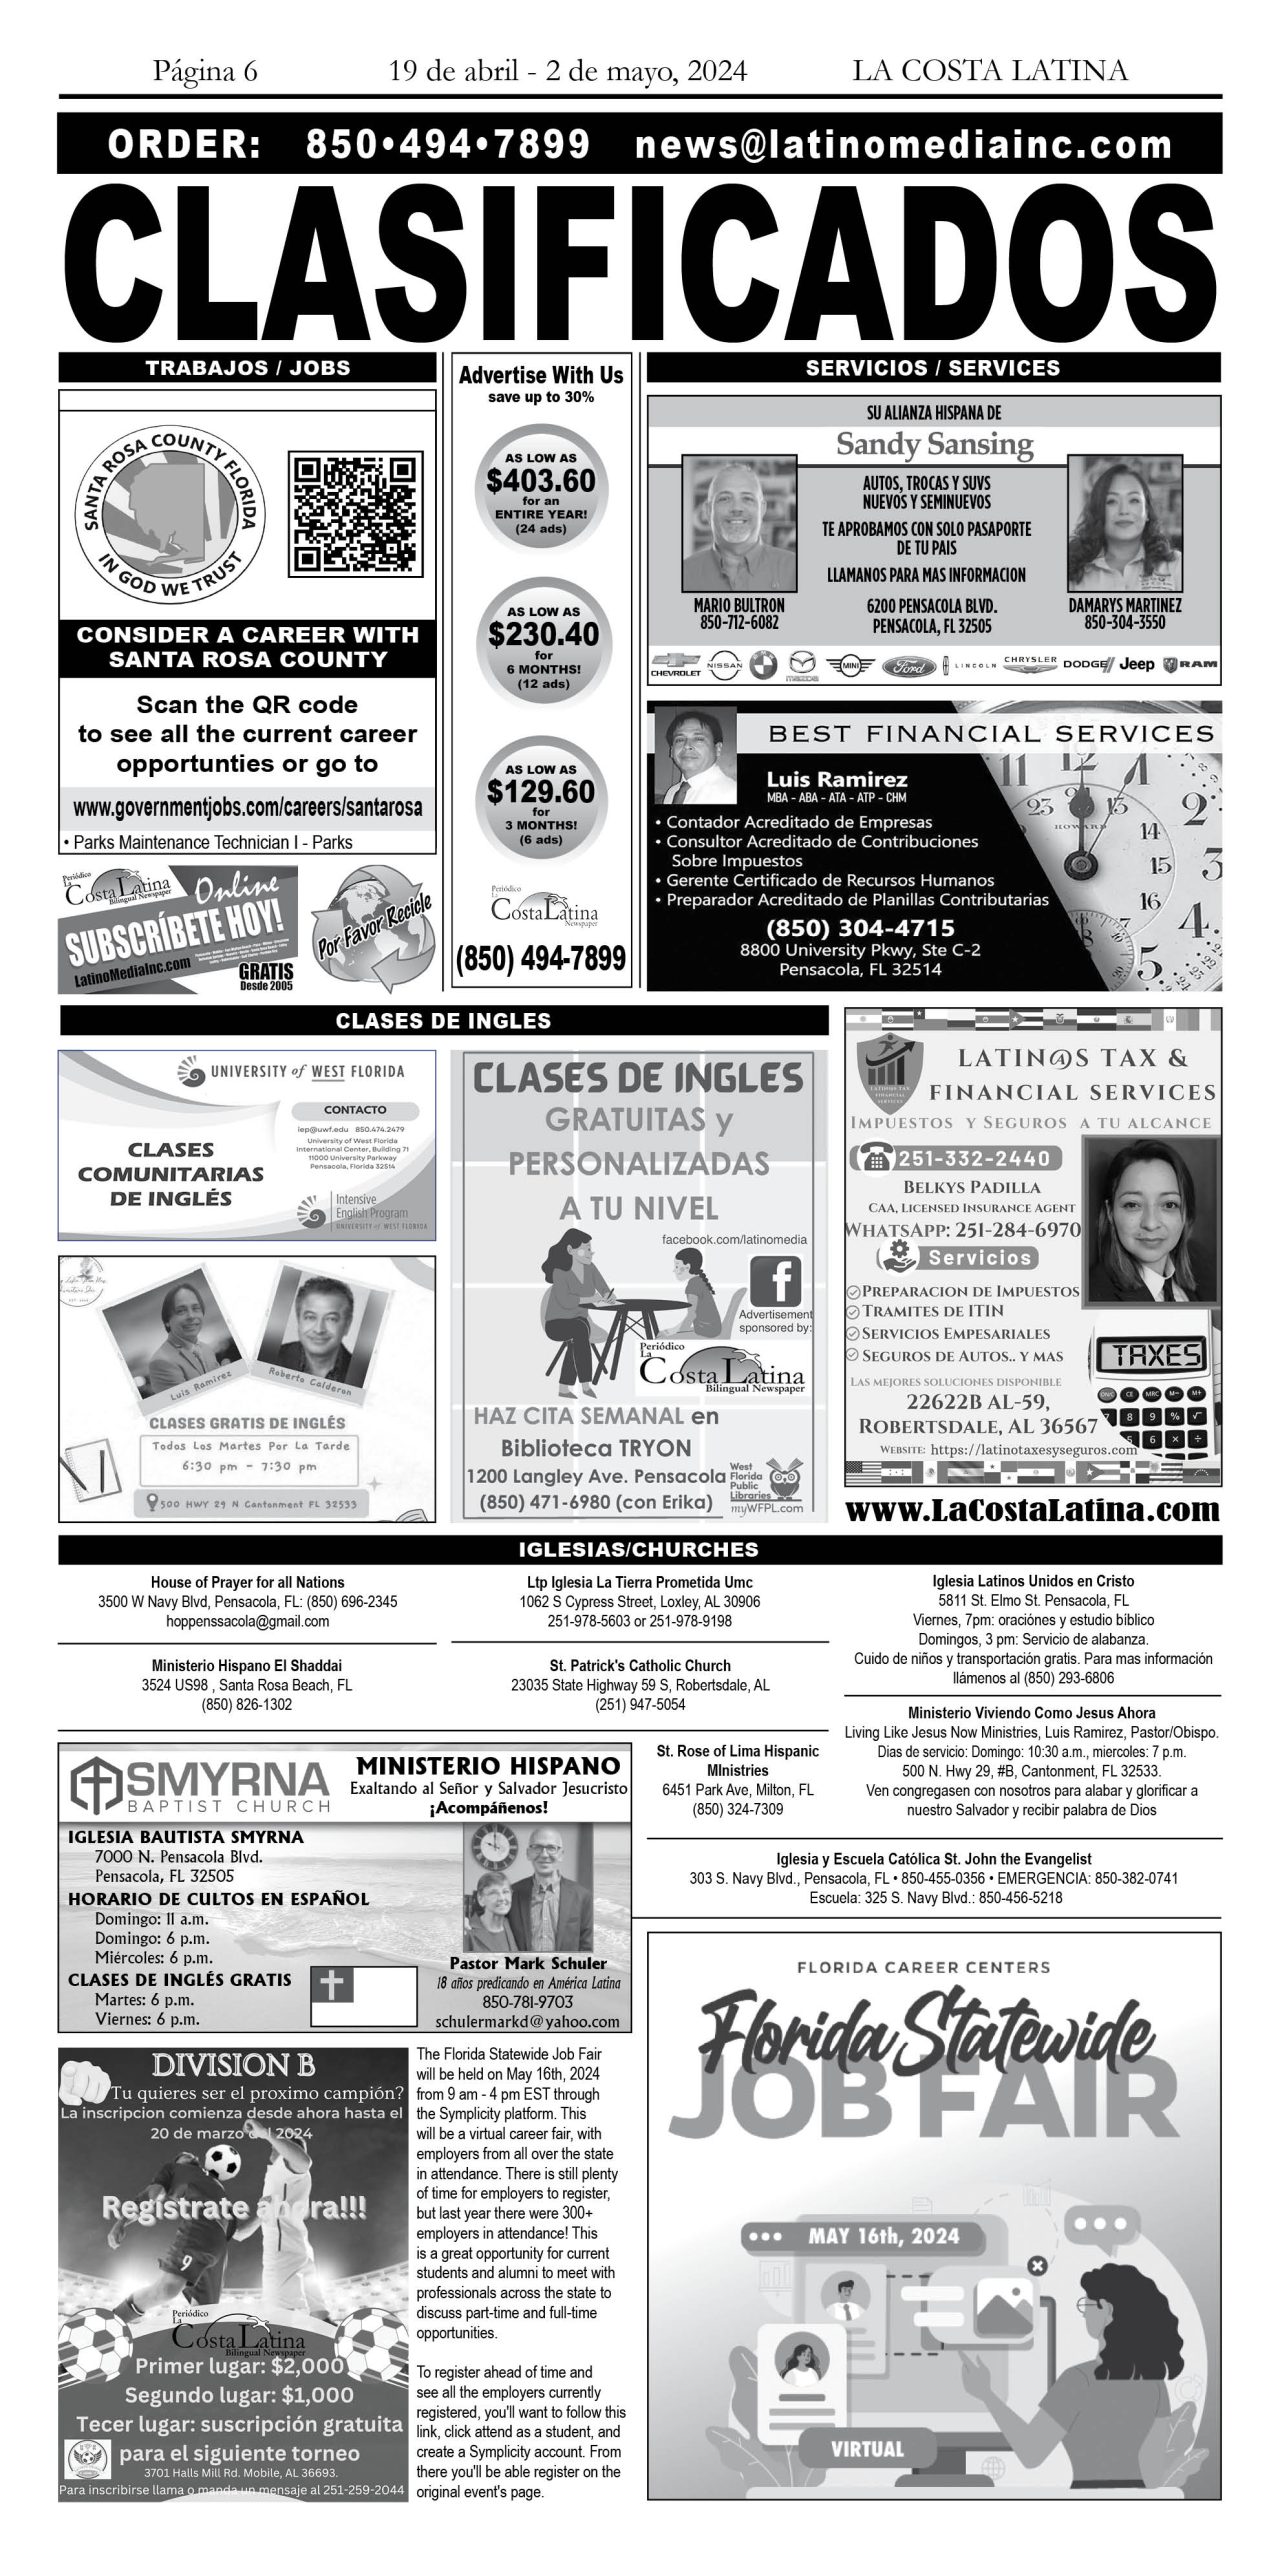 La Costa Latina April 19 - May 2, 2024 page 6